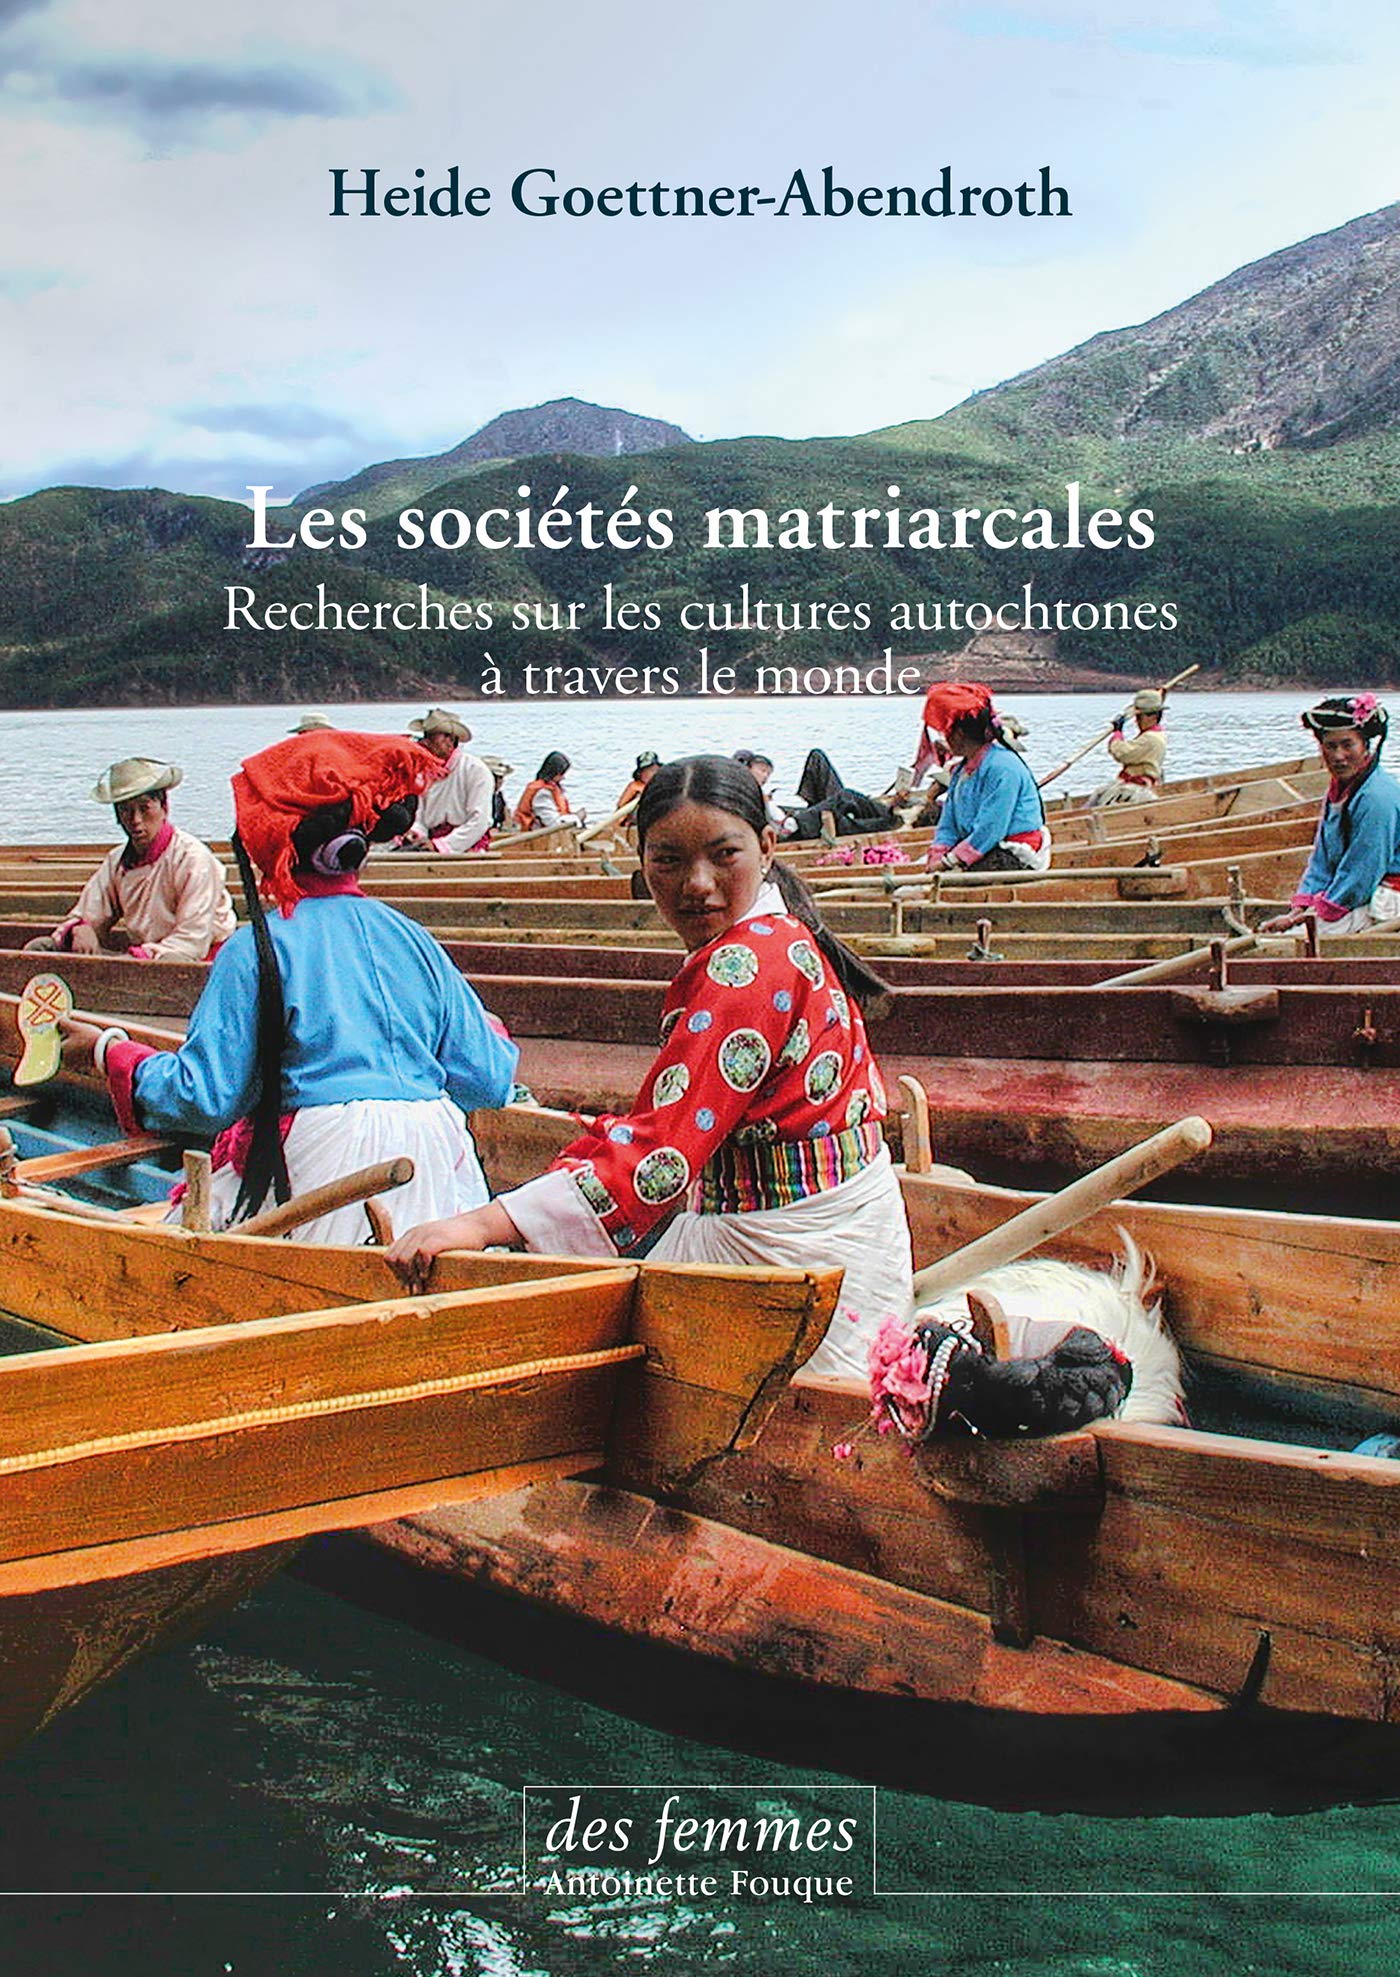 Les sociétés matriarcales. Recherches sur les cultures autochtones à travers le monde, 2019, 570 p.